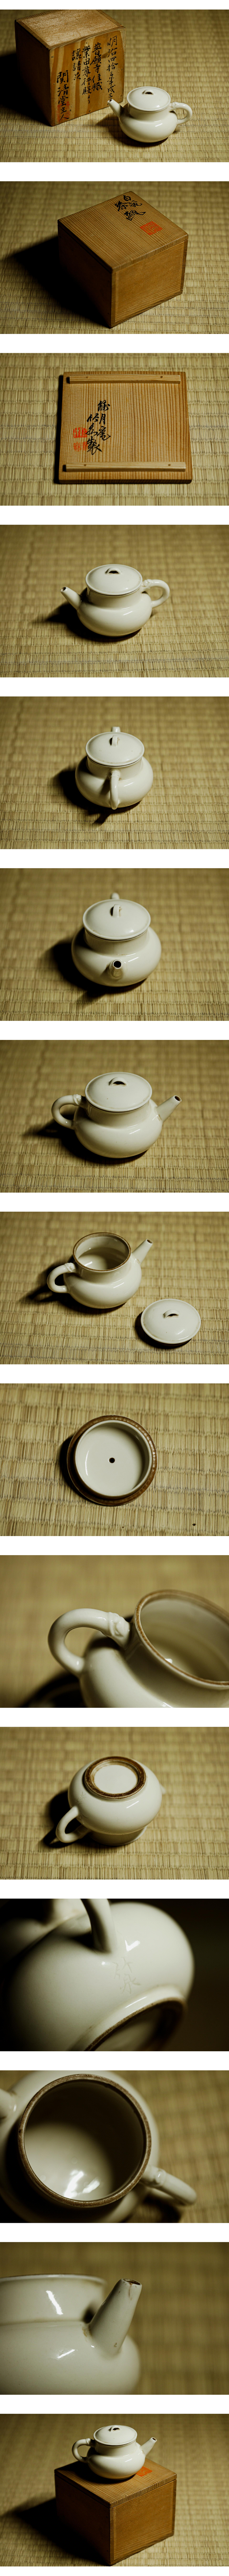 定番低価初代 三浦竹泉 白磁茶瓶 急須 共箱 サイズ11.4×7×高6.8cm 急須、土瓶